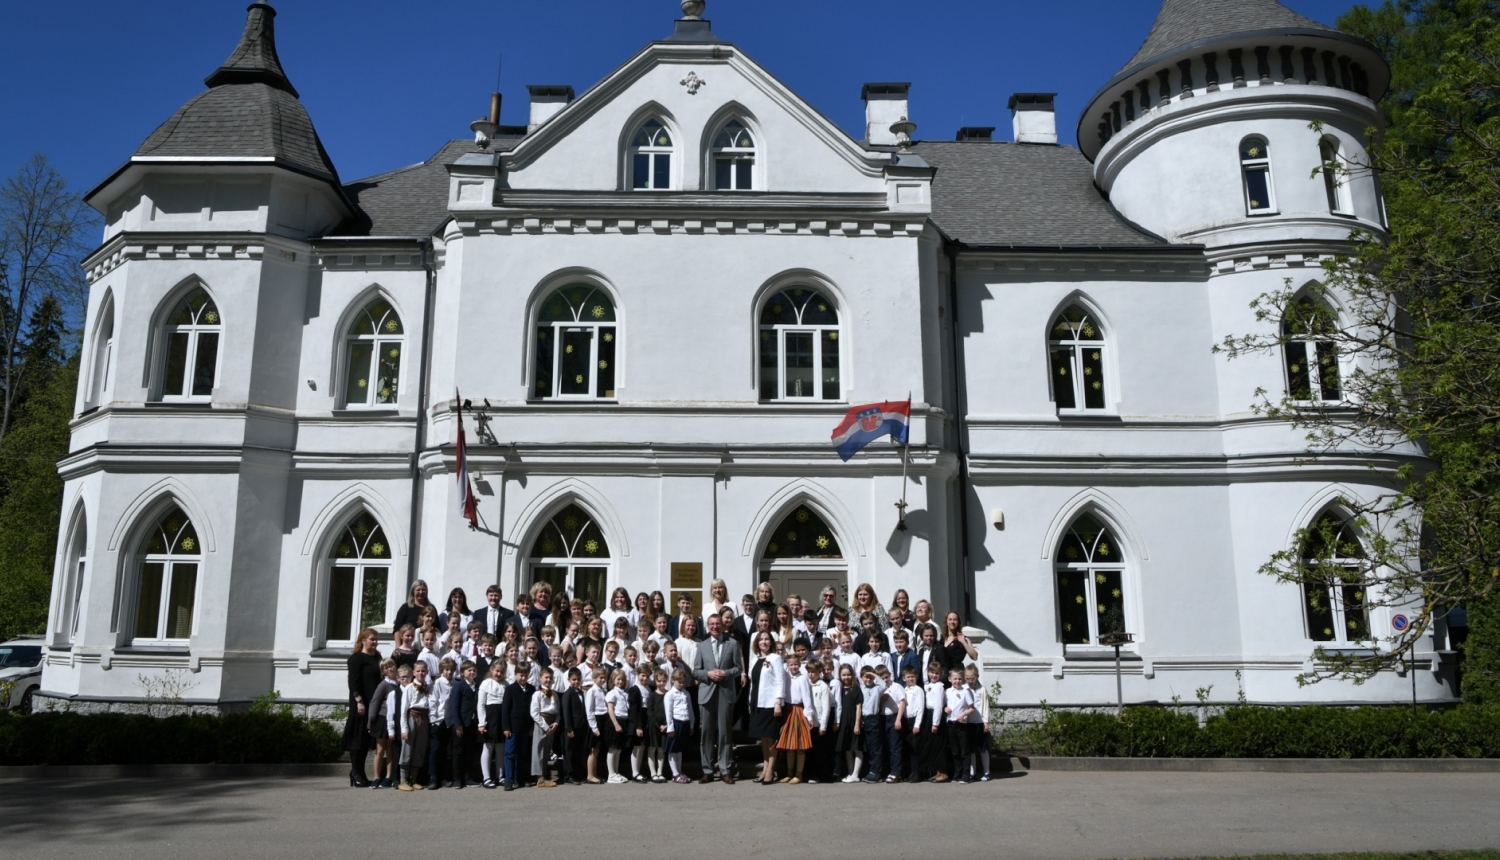 Valsts prezidents Edgars Rinkēvičs apmeklēja Baldones sākumskolu Latvijas Republikas neatkarības atjaunošanas 34. gadadienas ieskaņas pasākumā.